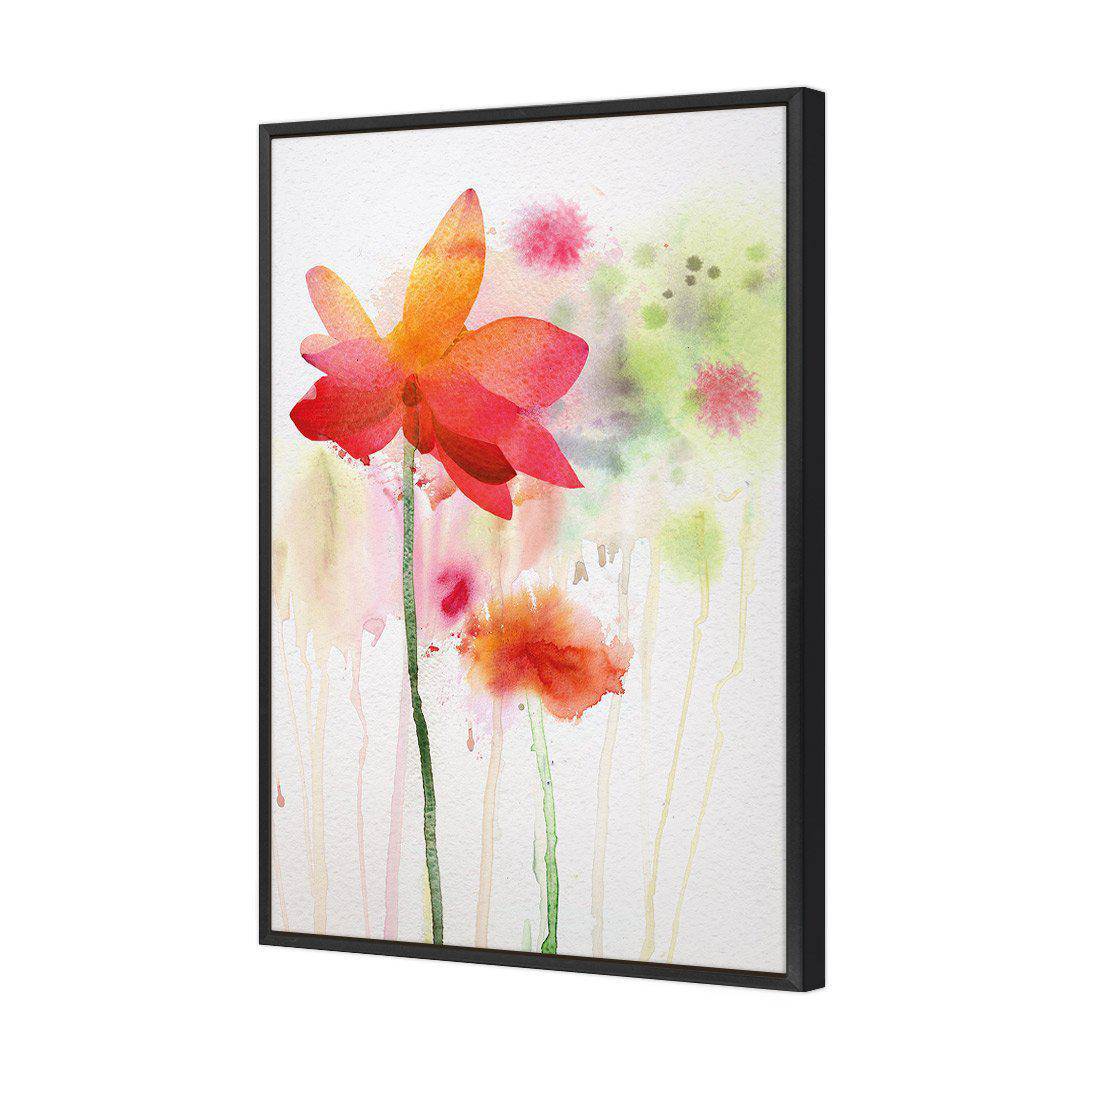 Spring Rain Canvas Art-Canvas-Wall Art Designs-45x30cm-Canvas - Black Frame-Wall Art Designs